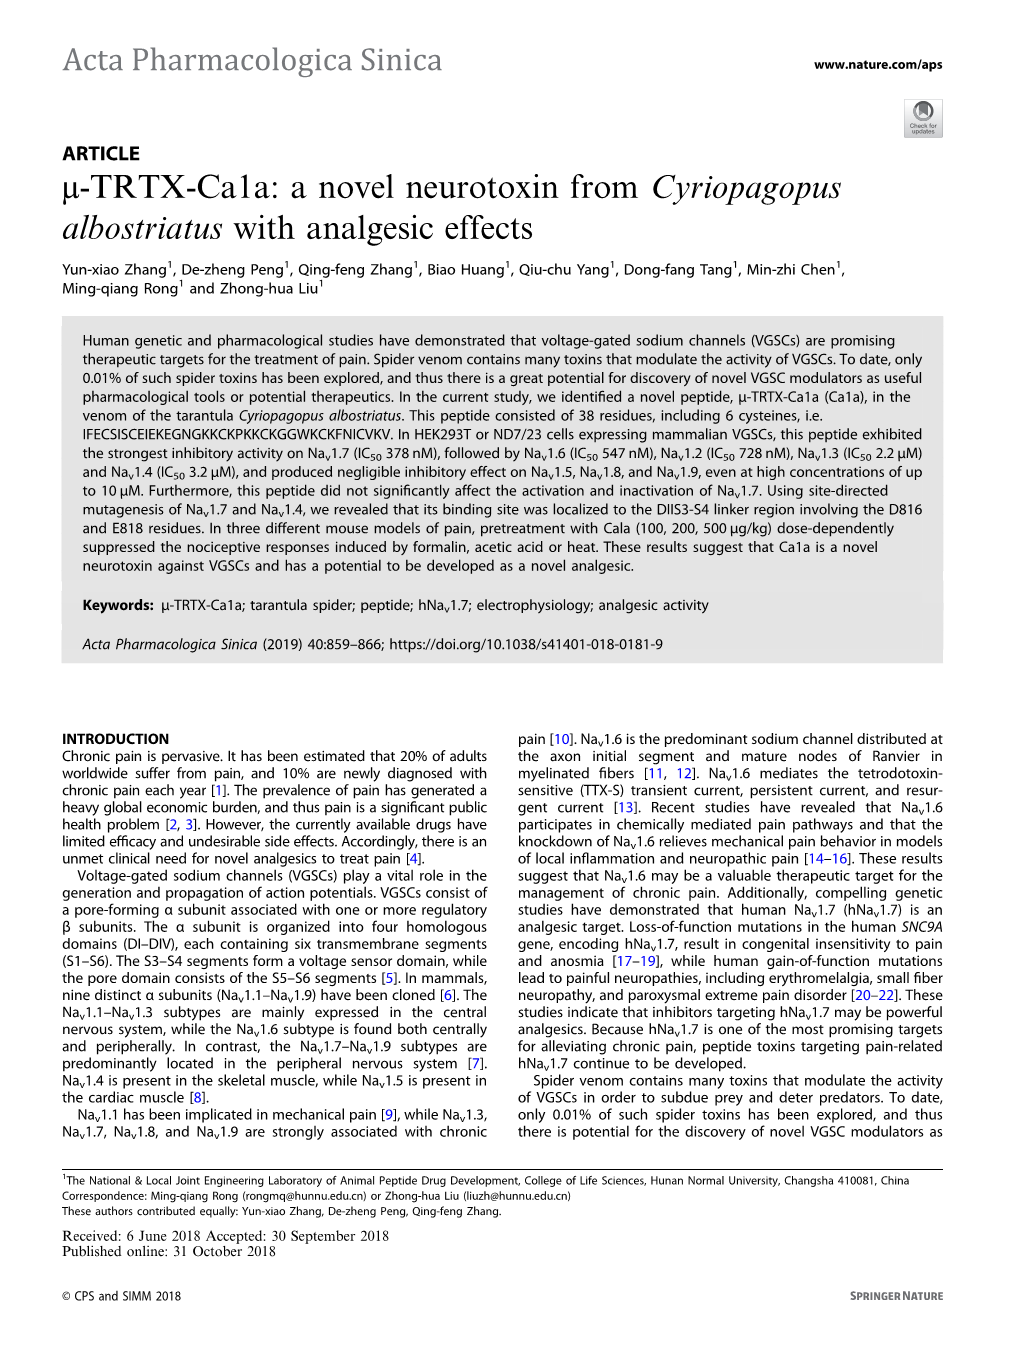 Μ-TRTX-Ca1a: a Novel Neurotoxin from Cyriopagopus Albostriatus with Analgesic Effects